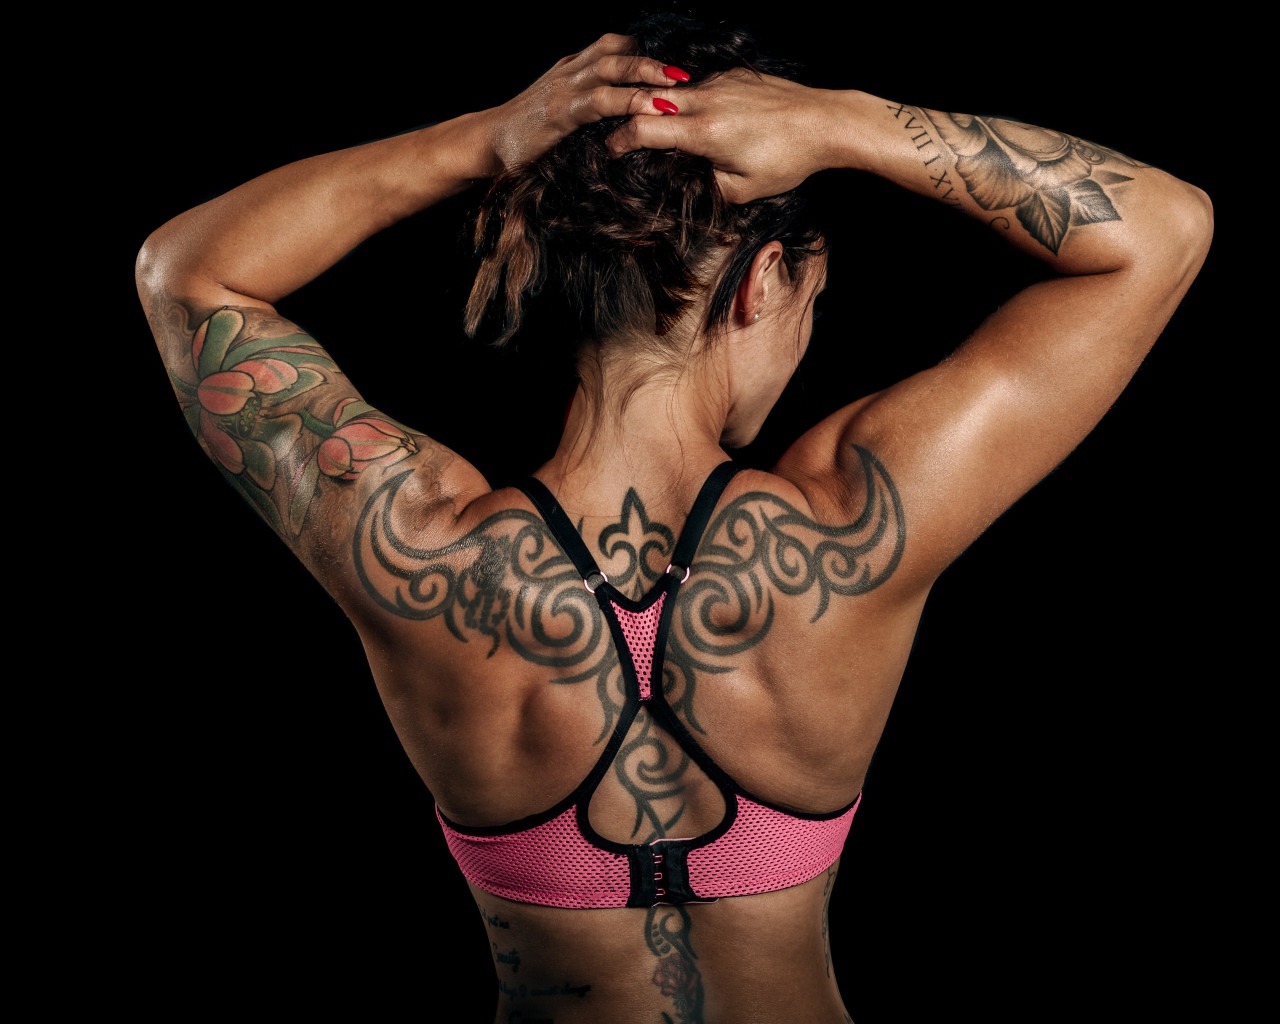 Татуировки на теле спортивной девушки на черном фоне